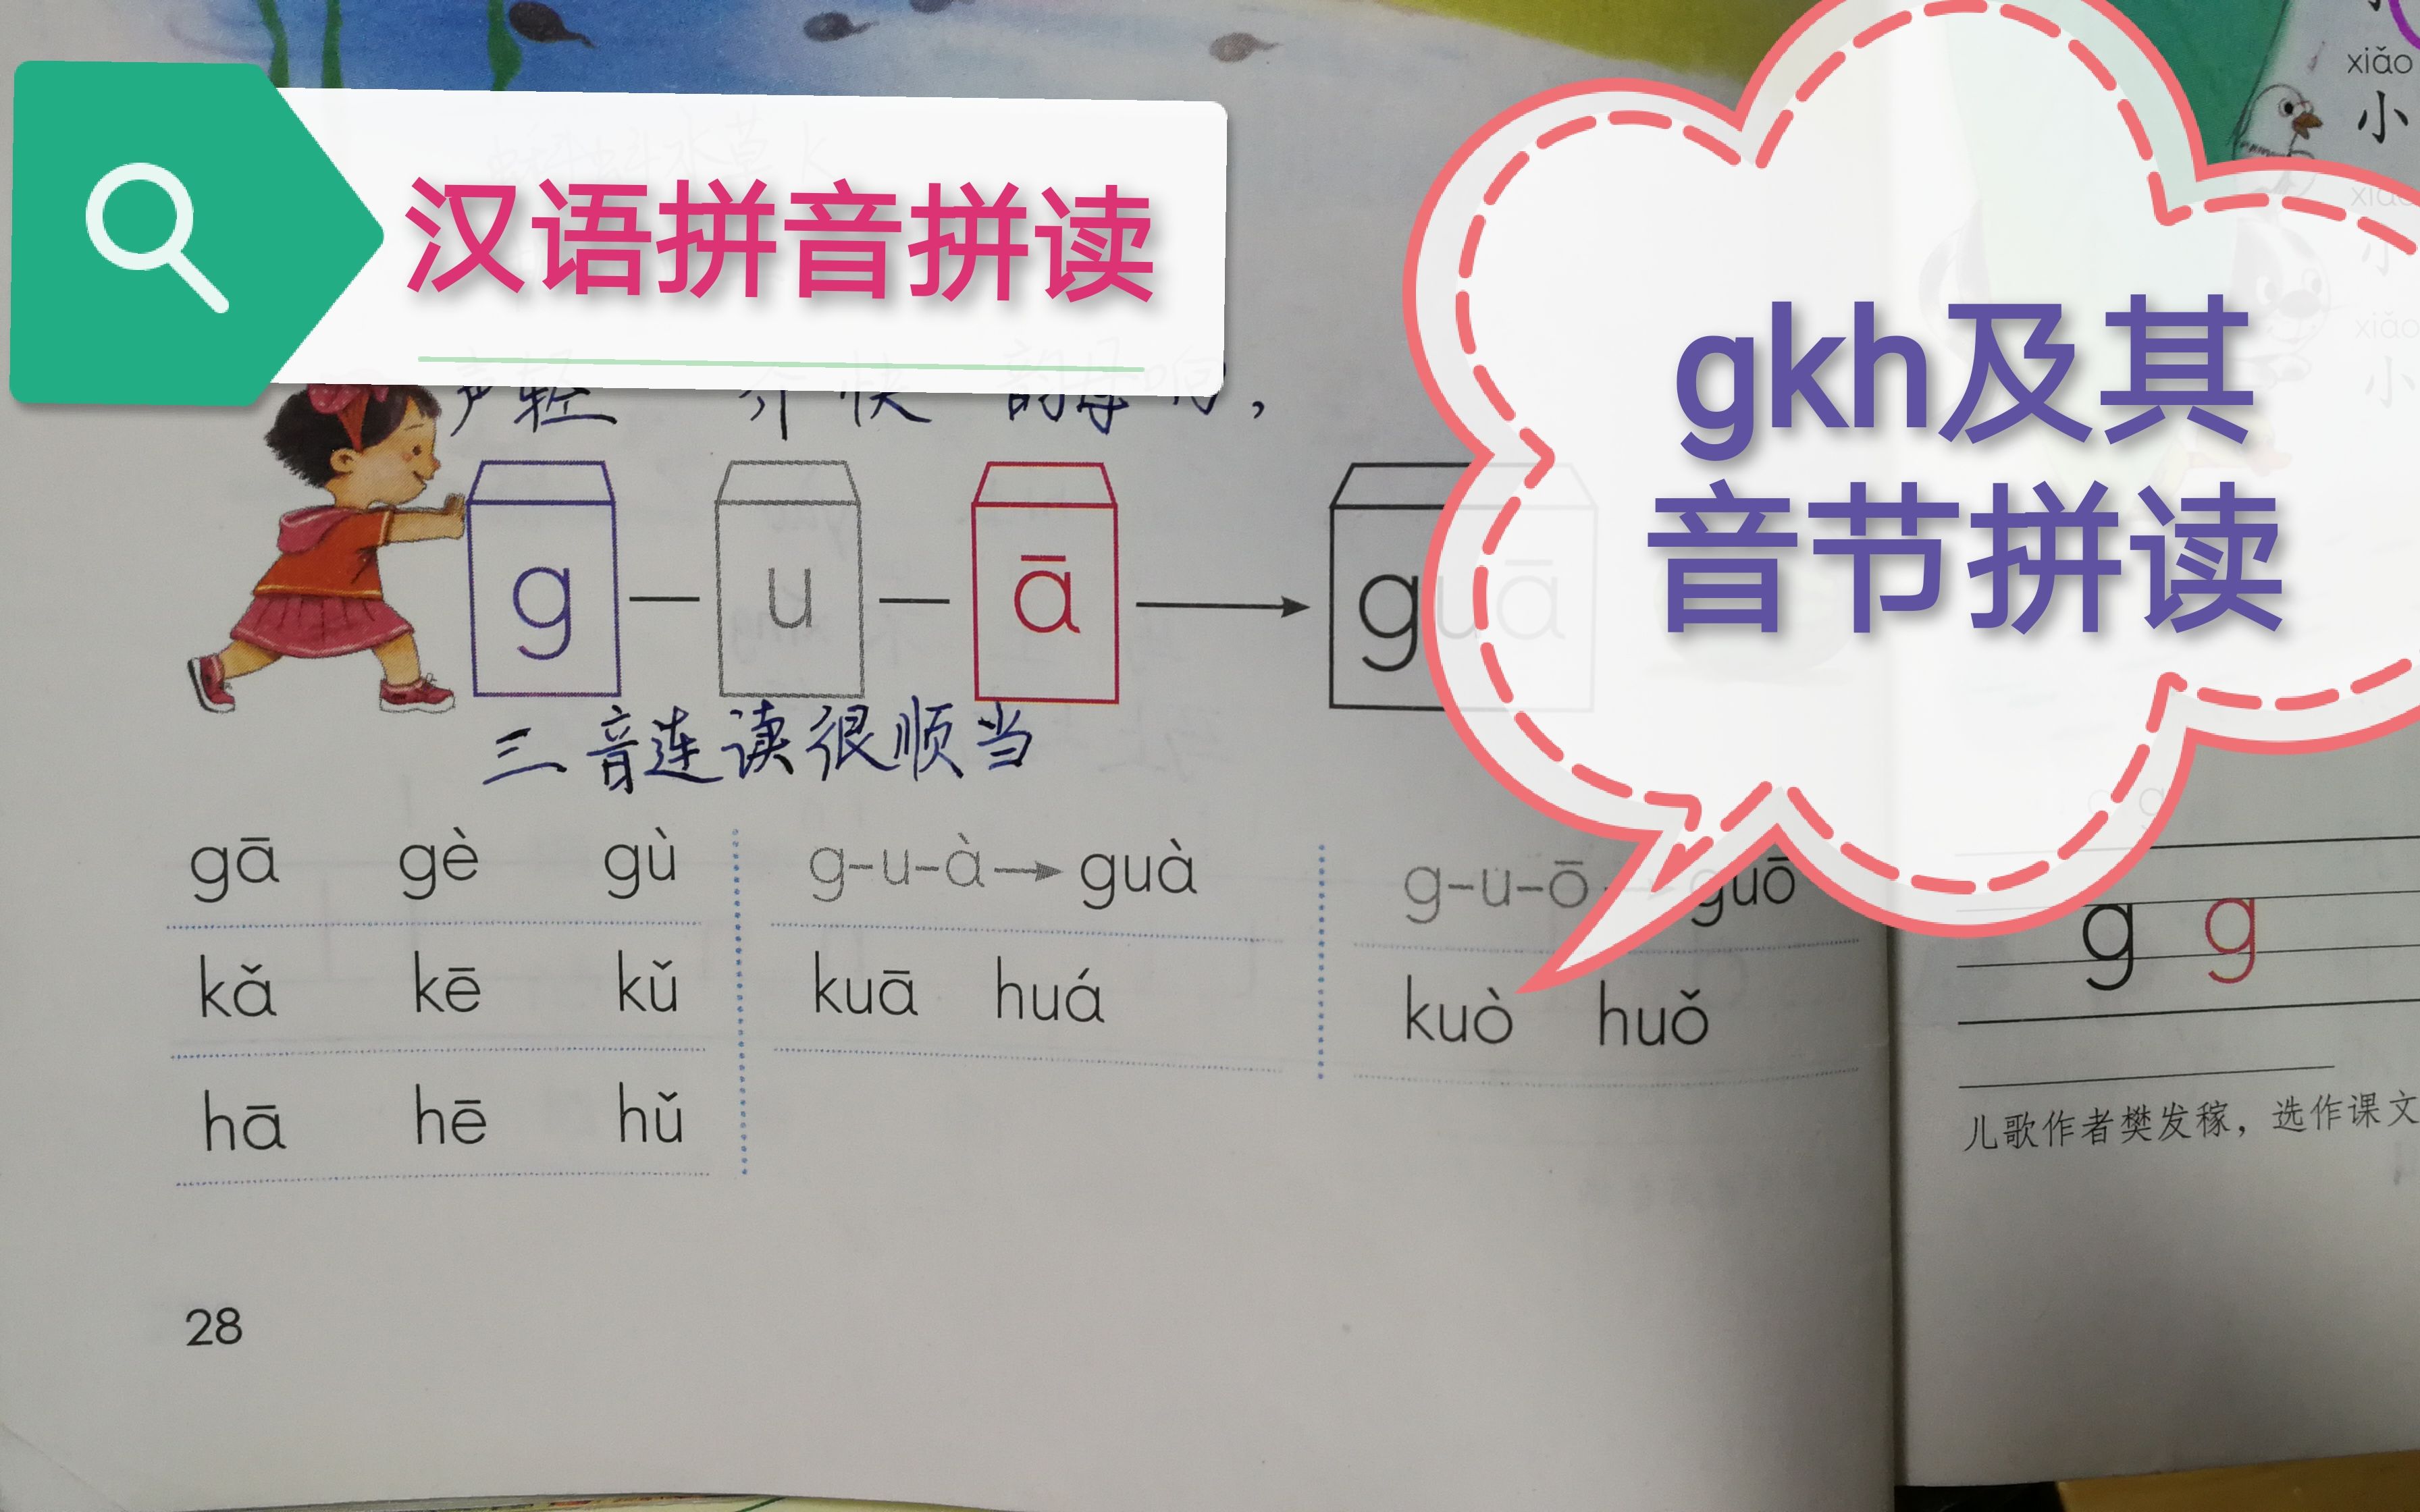 gkh的拼读音节图片图片